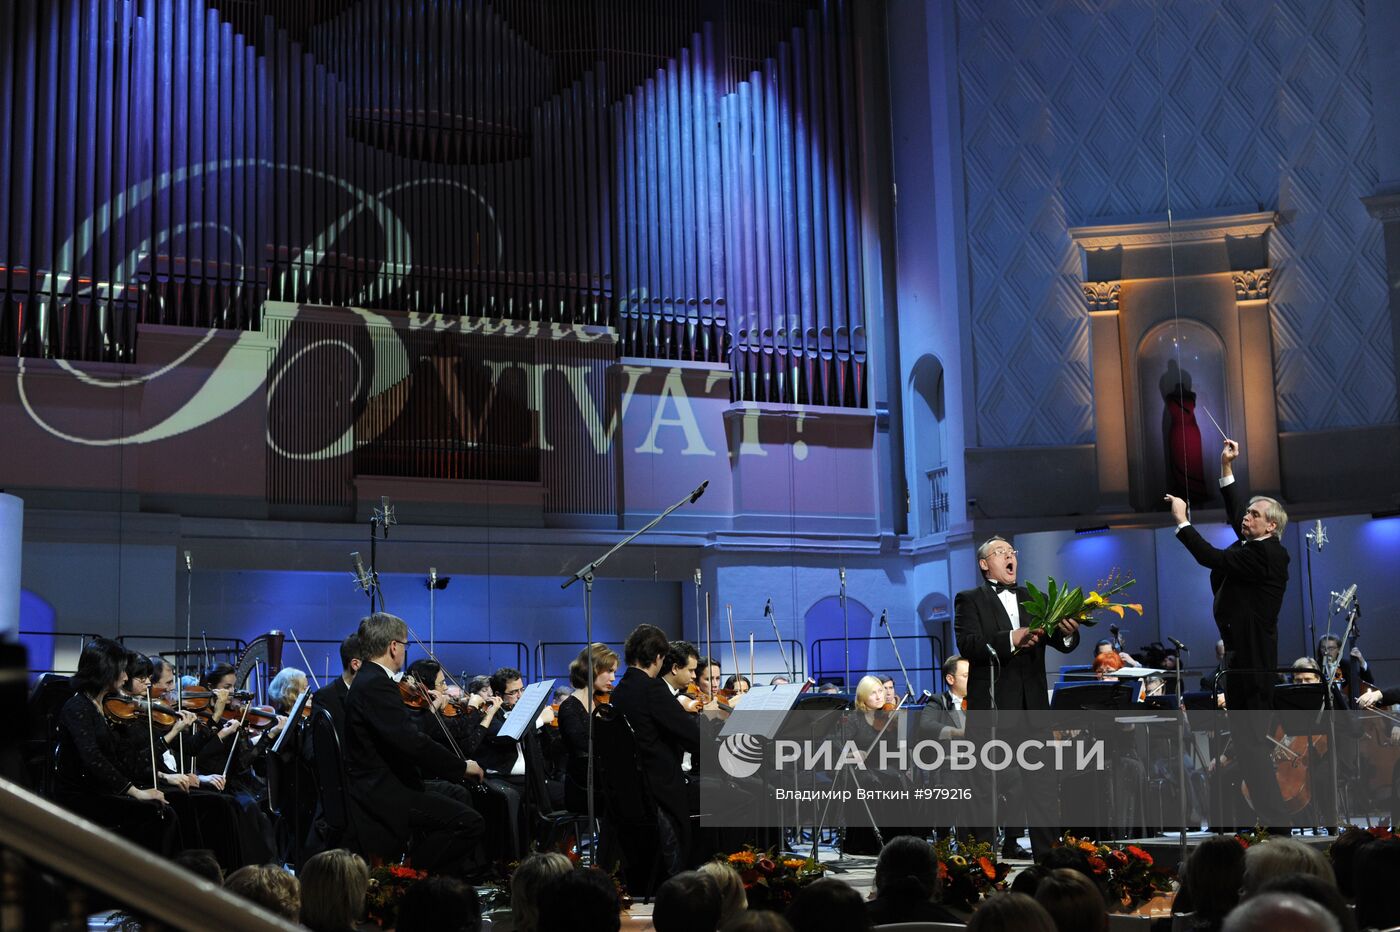 Концерт в честь дня рождения Г. Вишневской "Вишневская, vivat!"